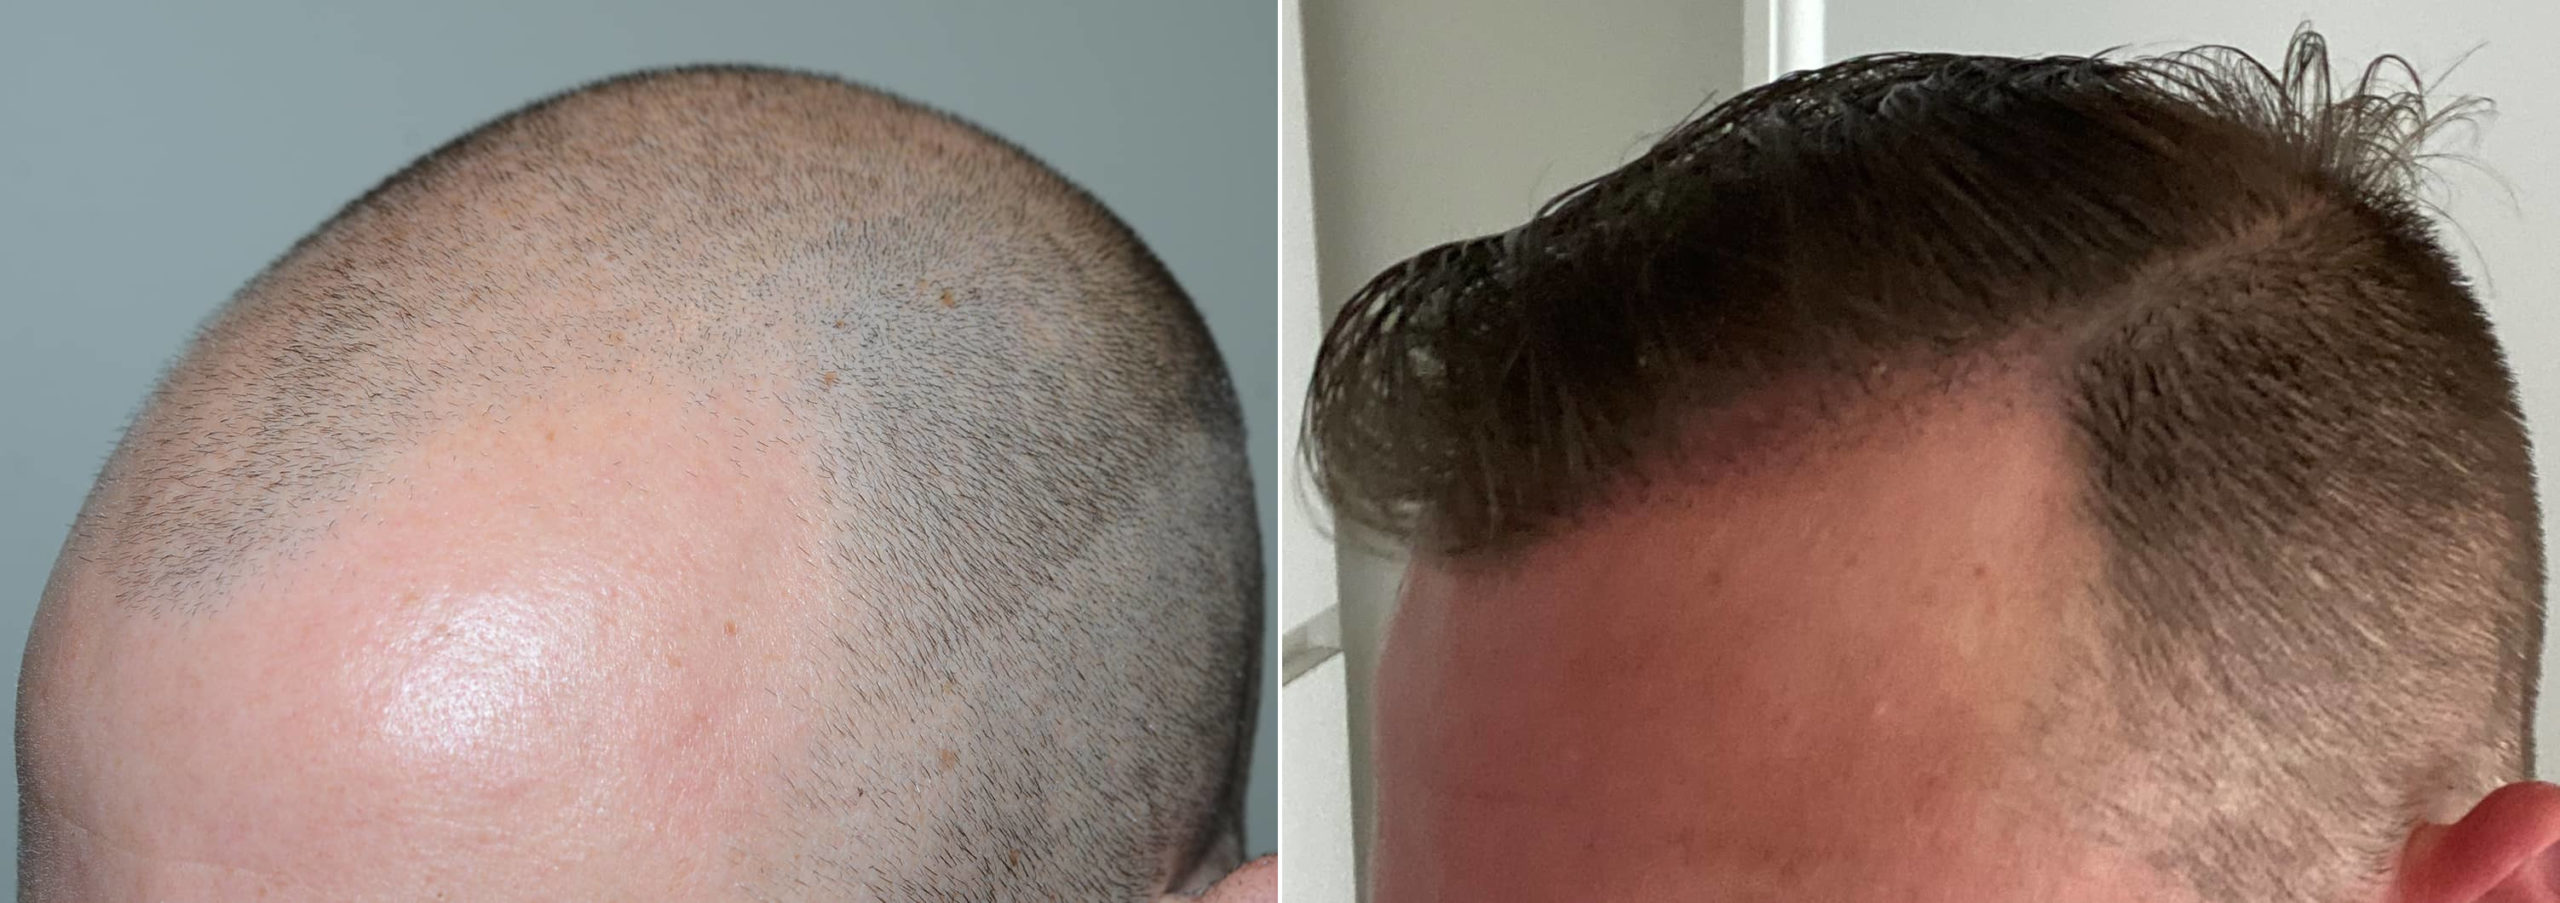 Before- After - Hair Transplant Results - - DREmrah CINIK